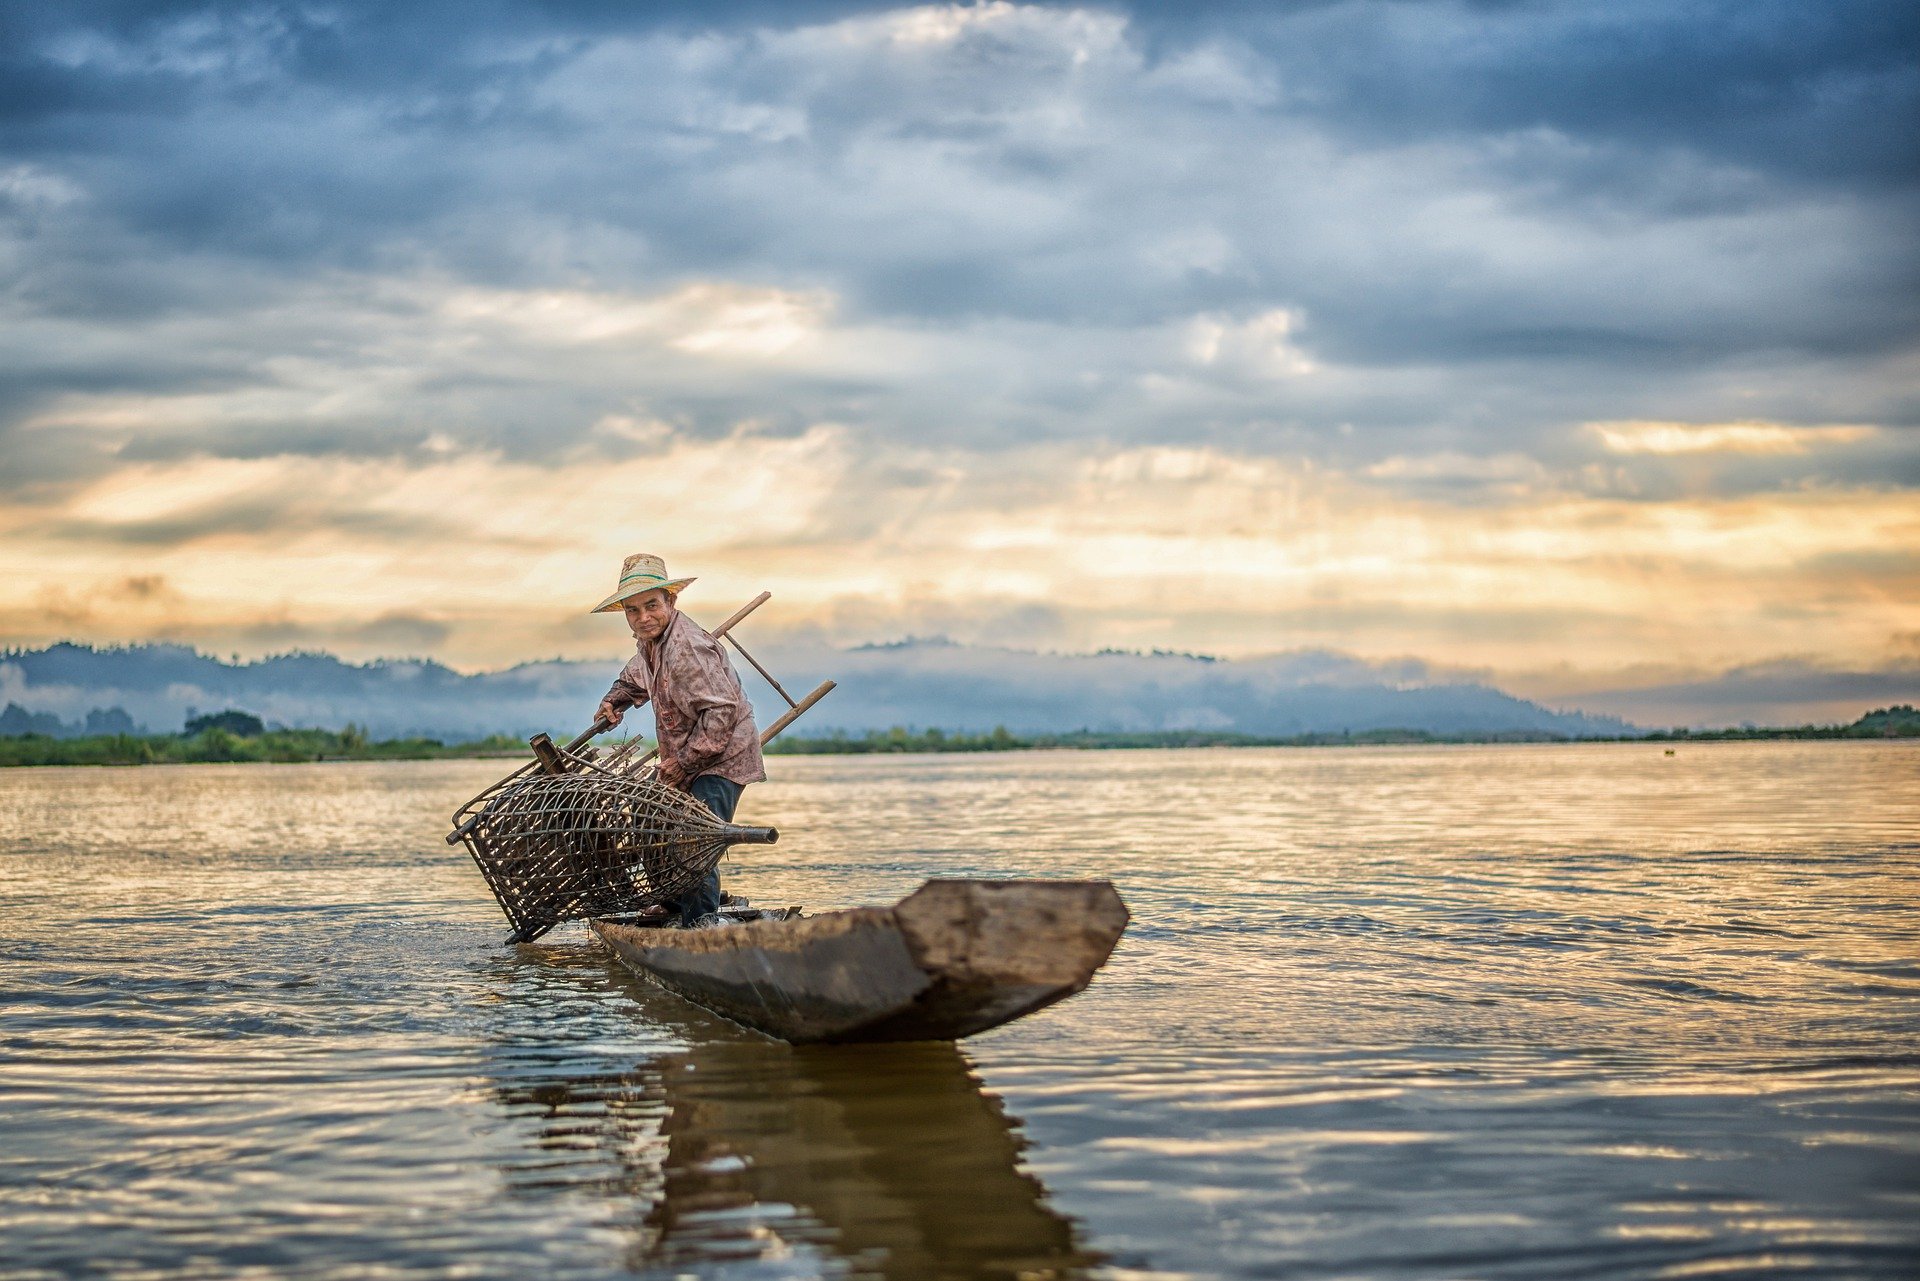 Ein Fischer ist mit dem Fischfang beschäftigt. | Quelle: Pixabay